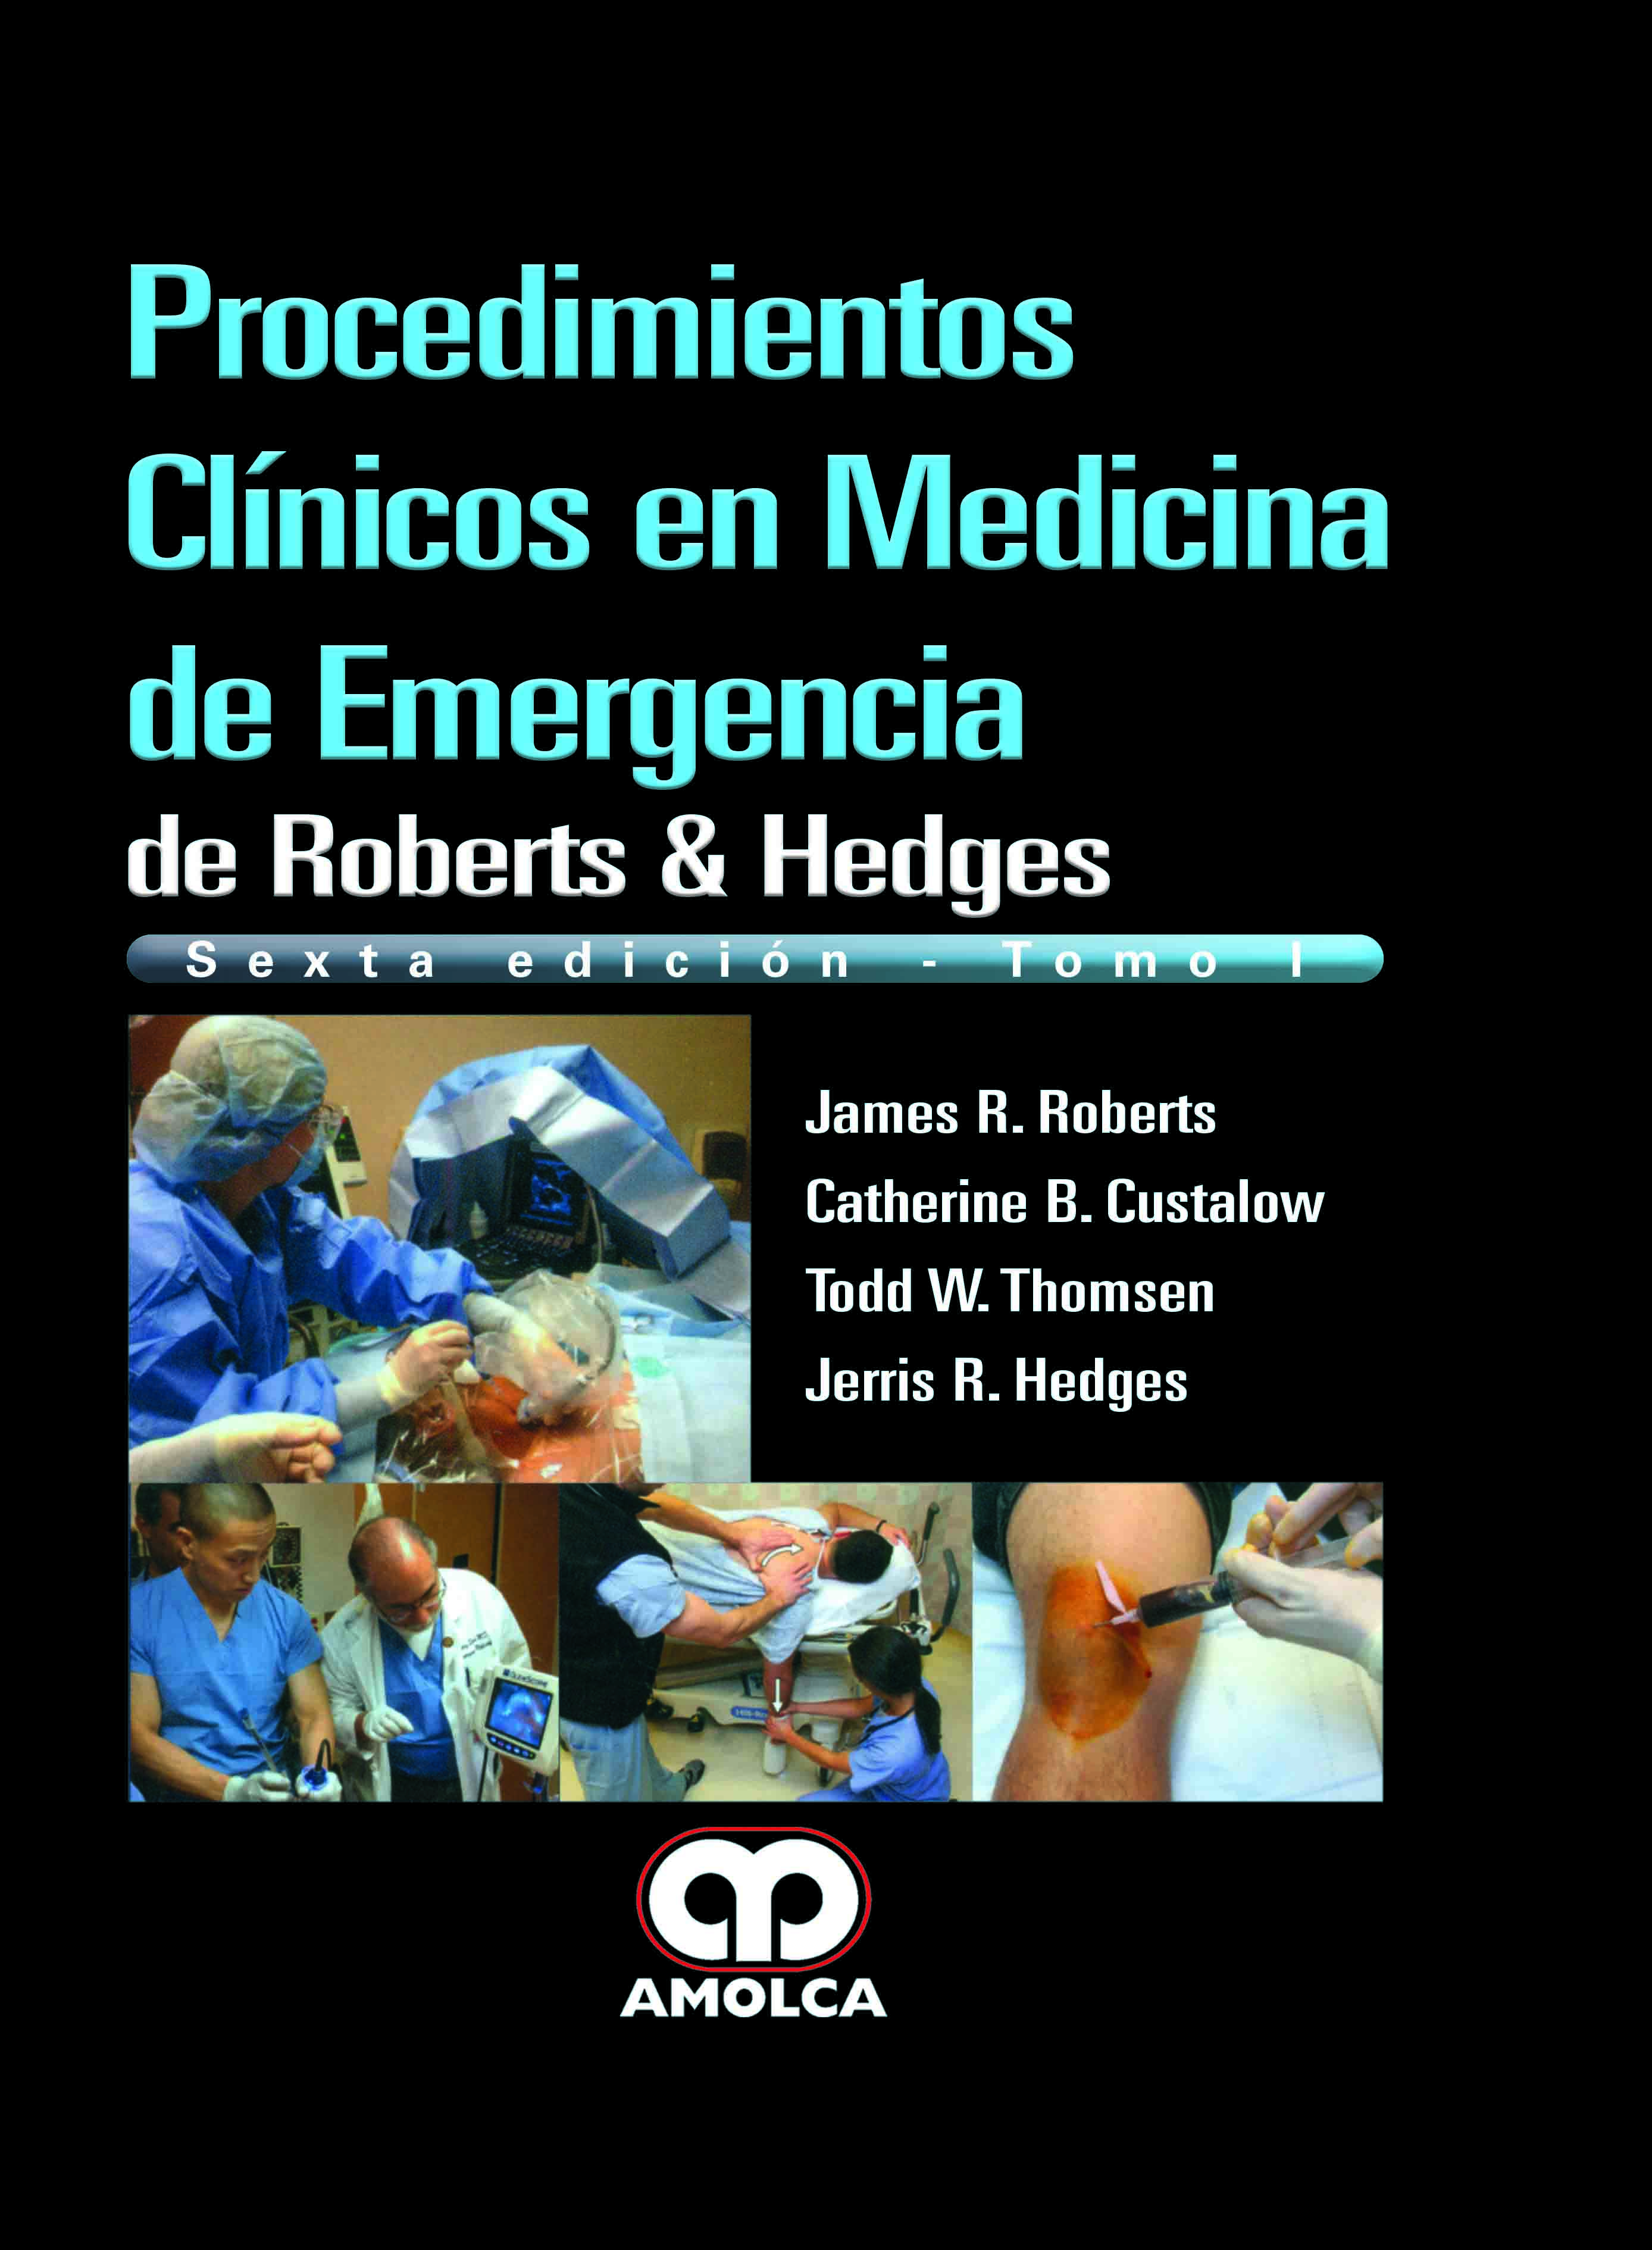 PROCEDIMIENTOS CLÍNICOS EN MEDICINA DE EMERGENCIA. 2 Tomos